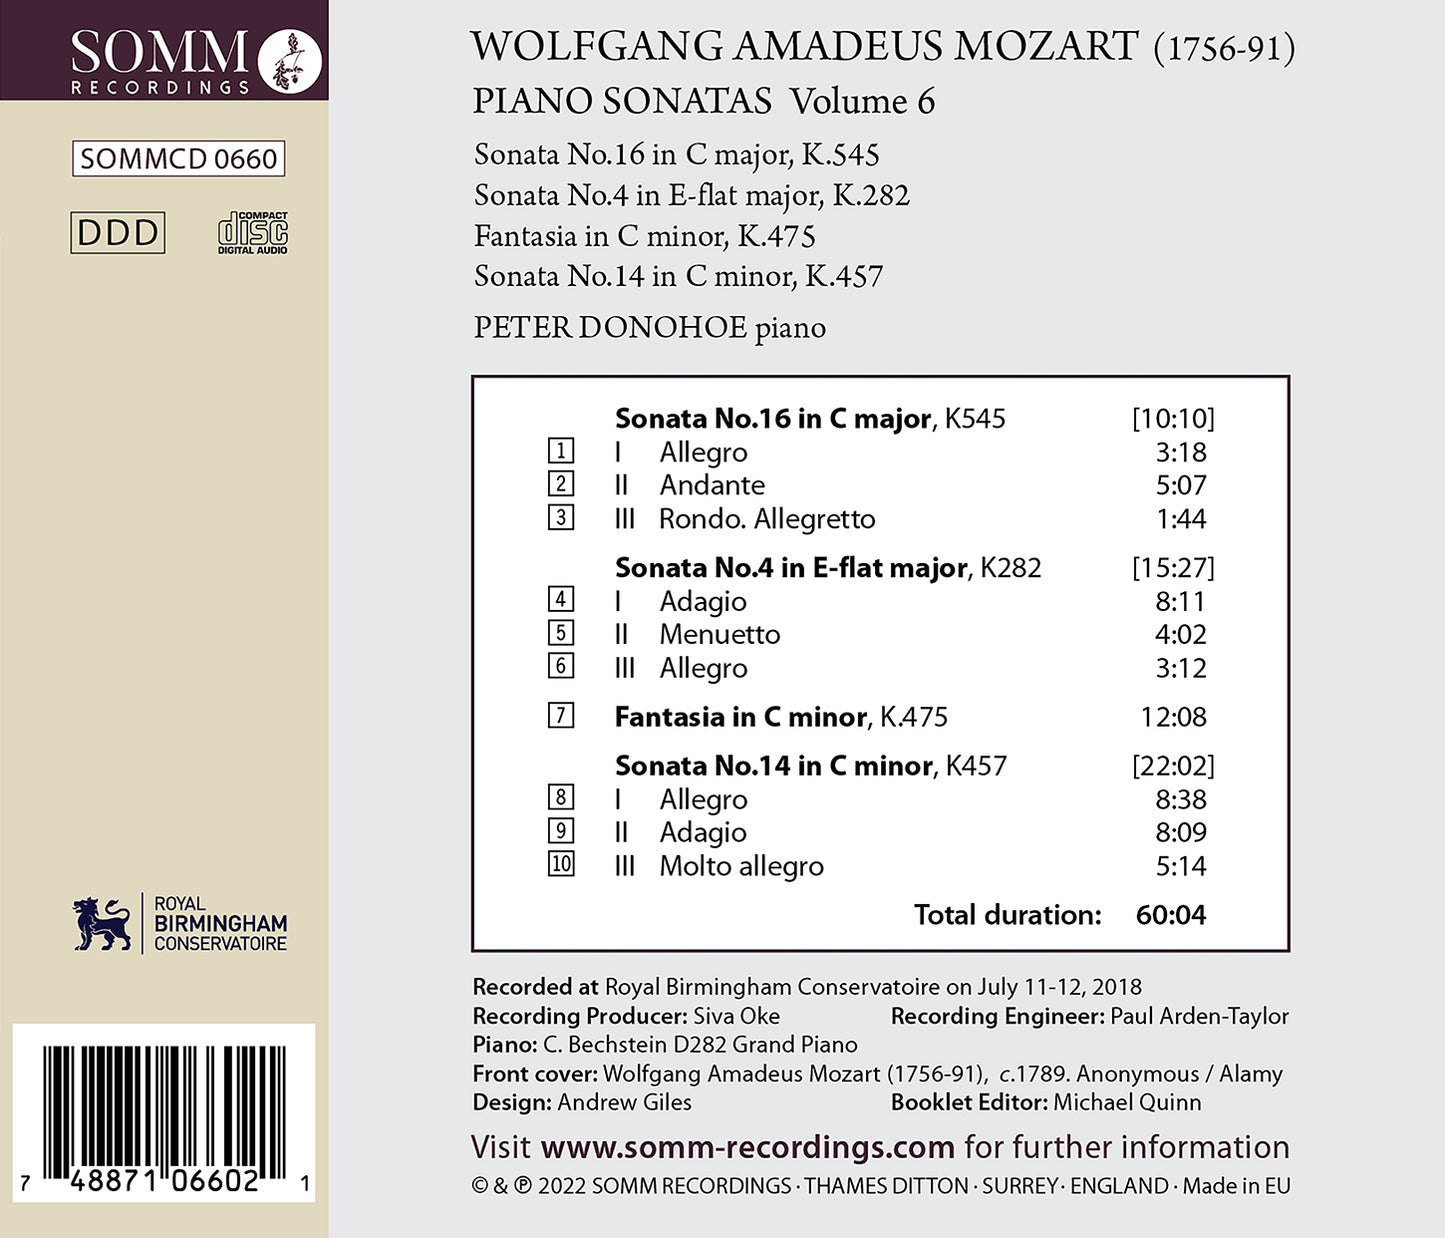 Mozart: Piano Sonatas, Vol. 6